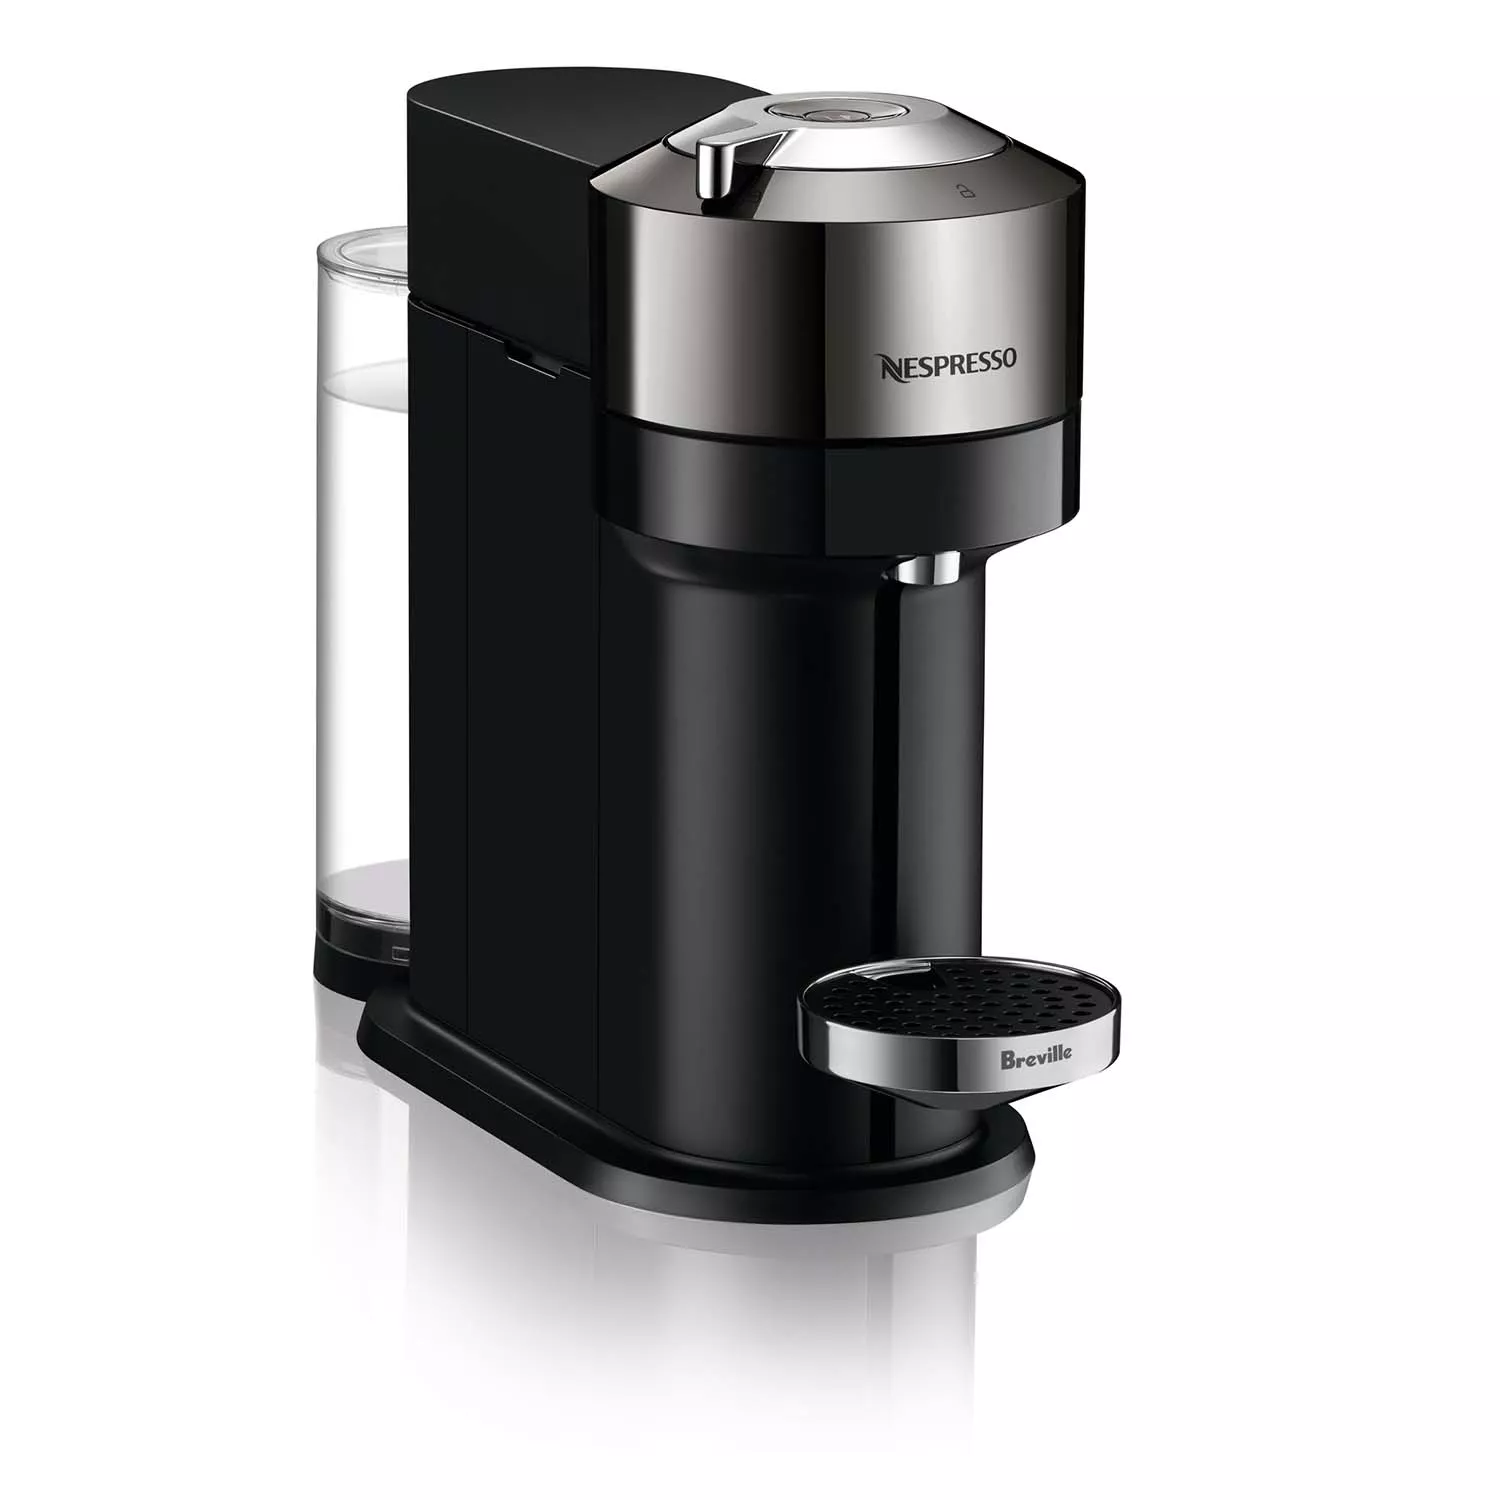 Nespresso Vertuo Next Deluxe Coffee and Espresso Maker by Breville, Dark Chrome